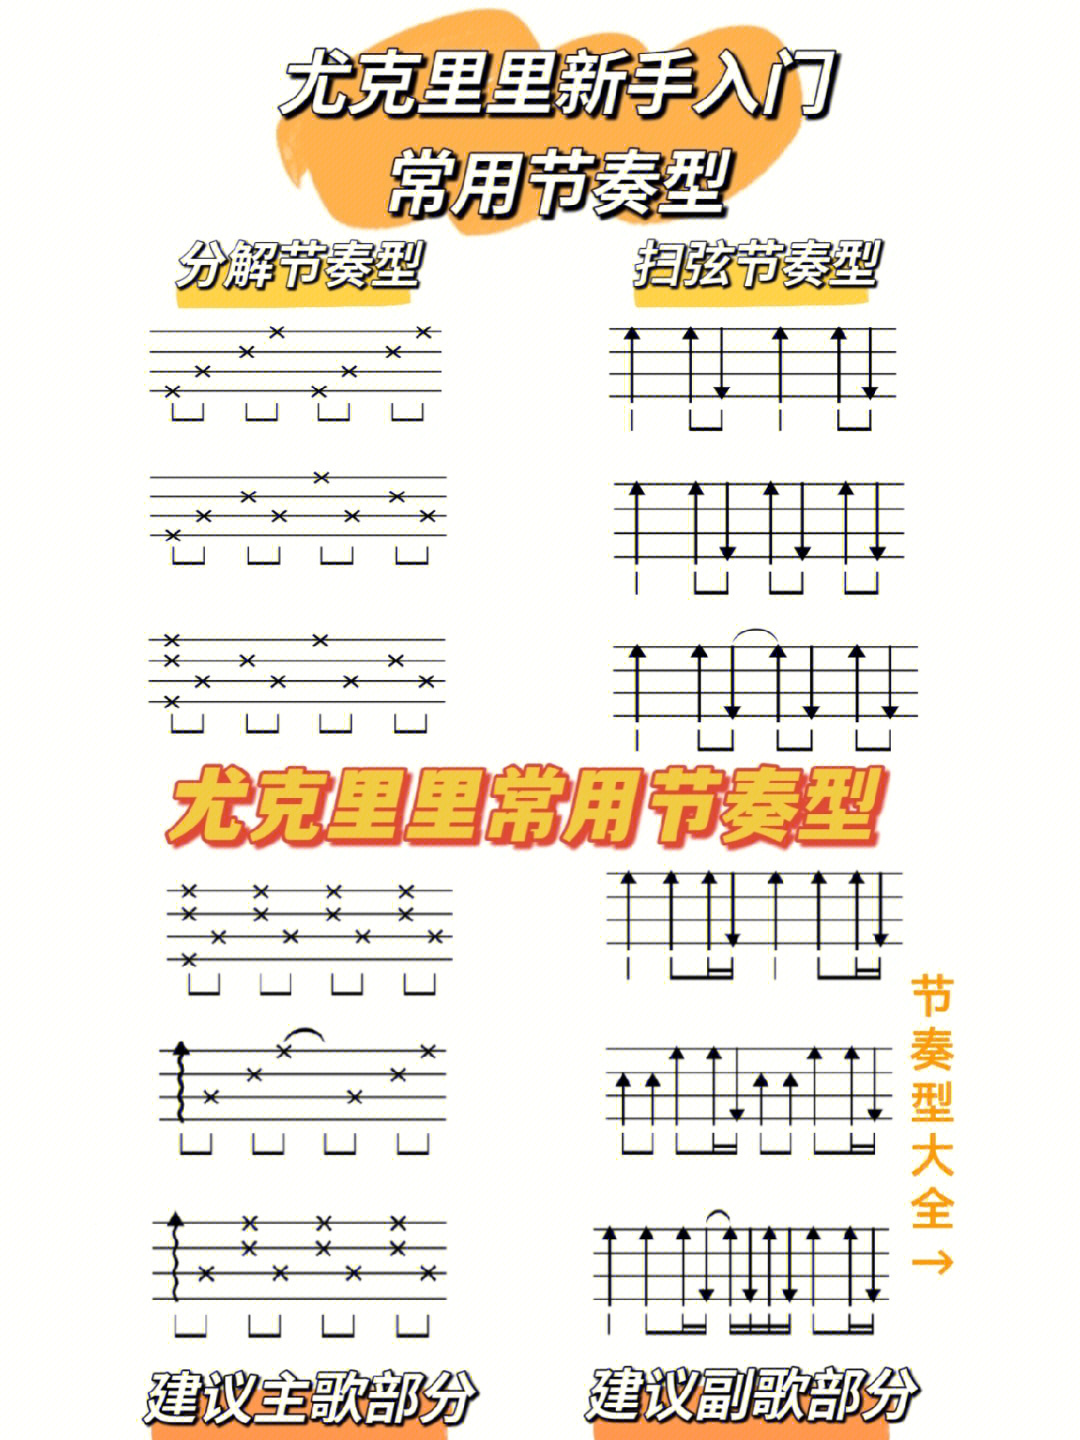 扫弦节奏型一般用于副歌部分的弹唱另外,还帮大家整理了90种尤克里里